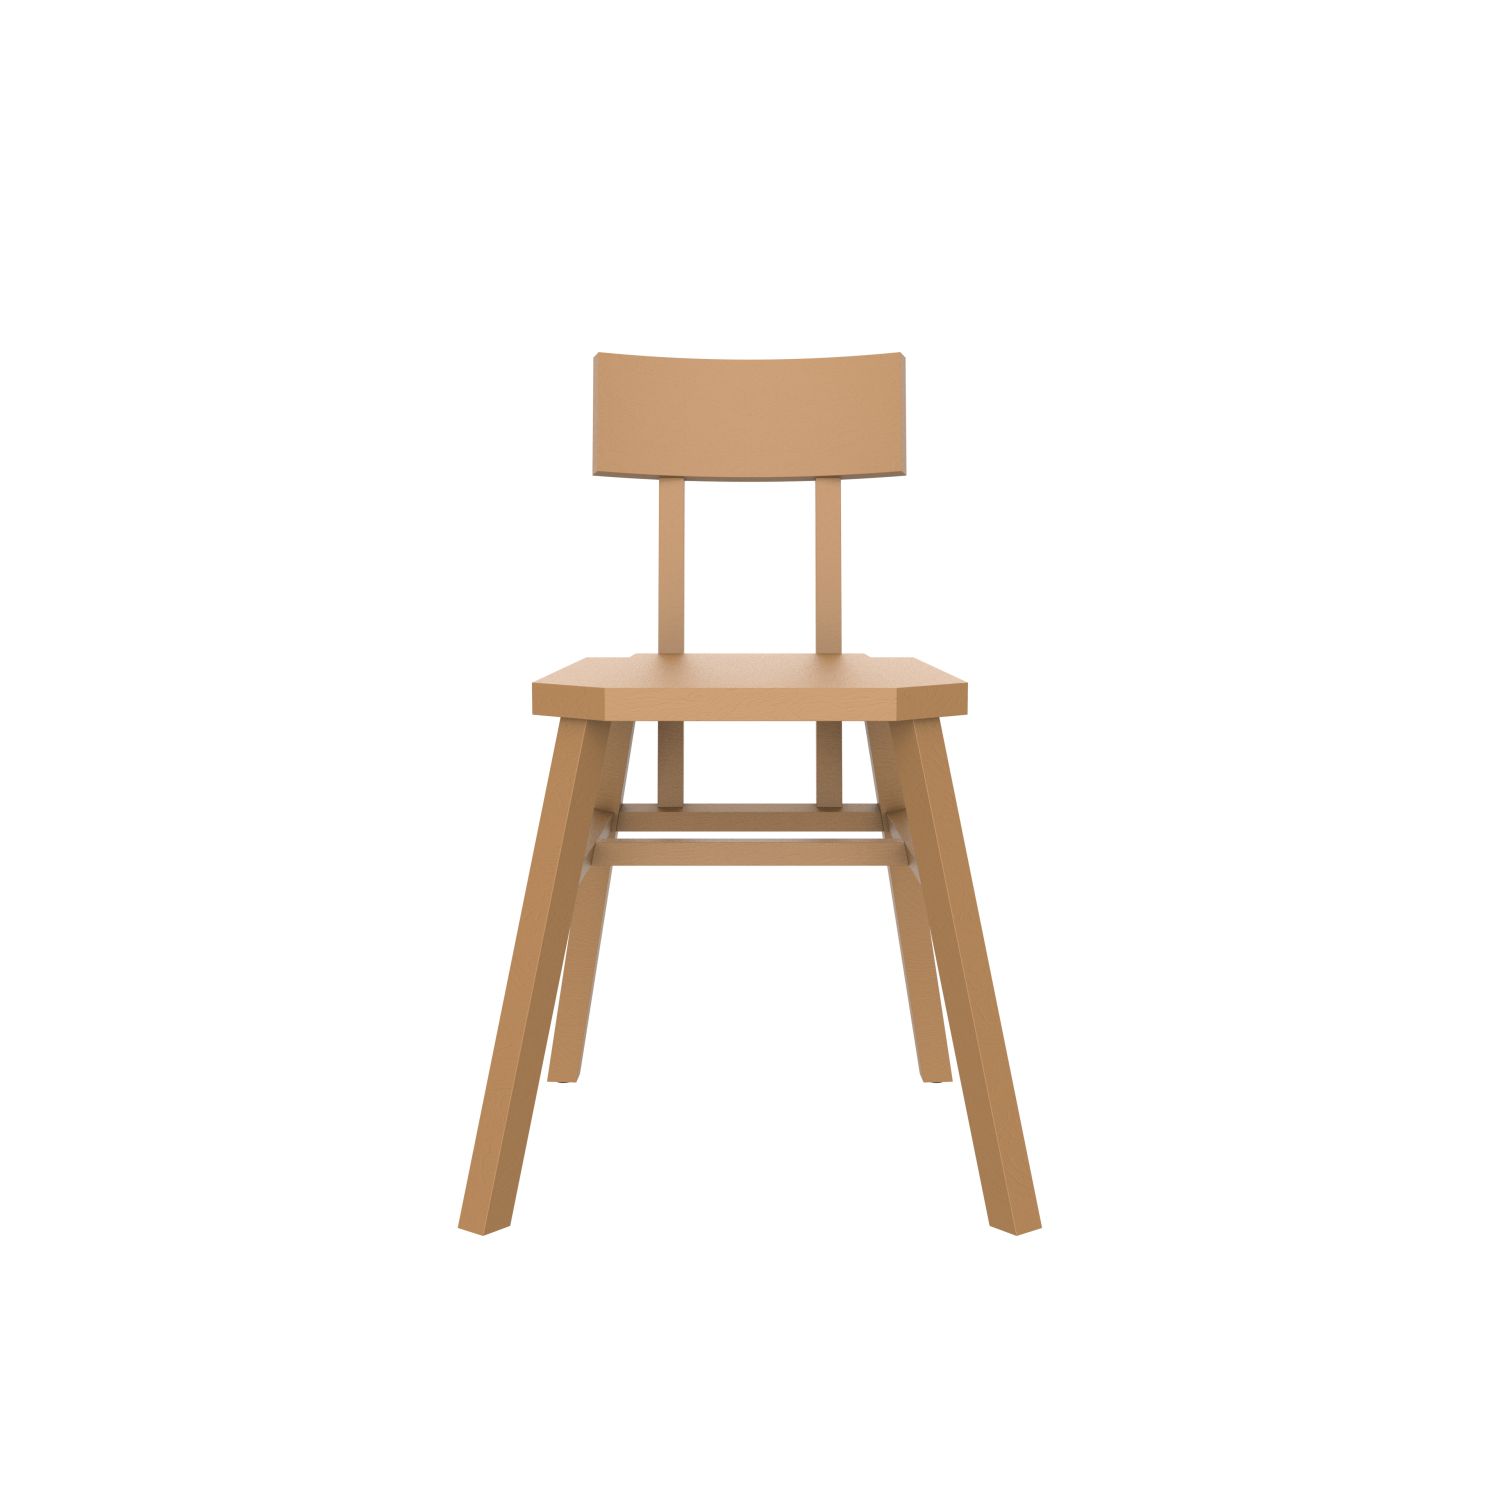 avl spider chair brown beige